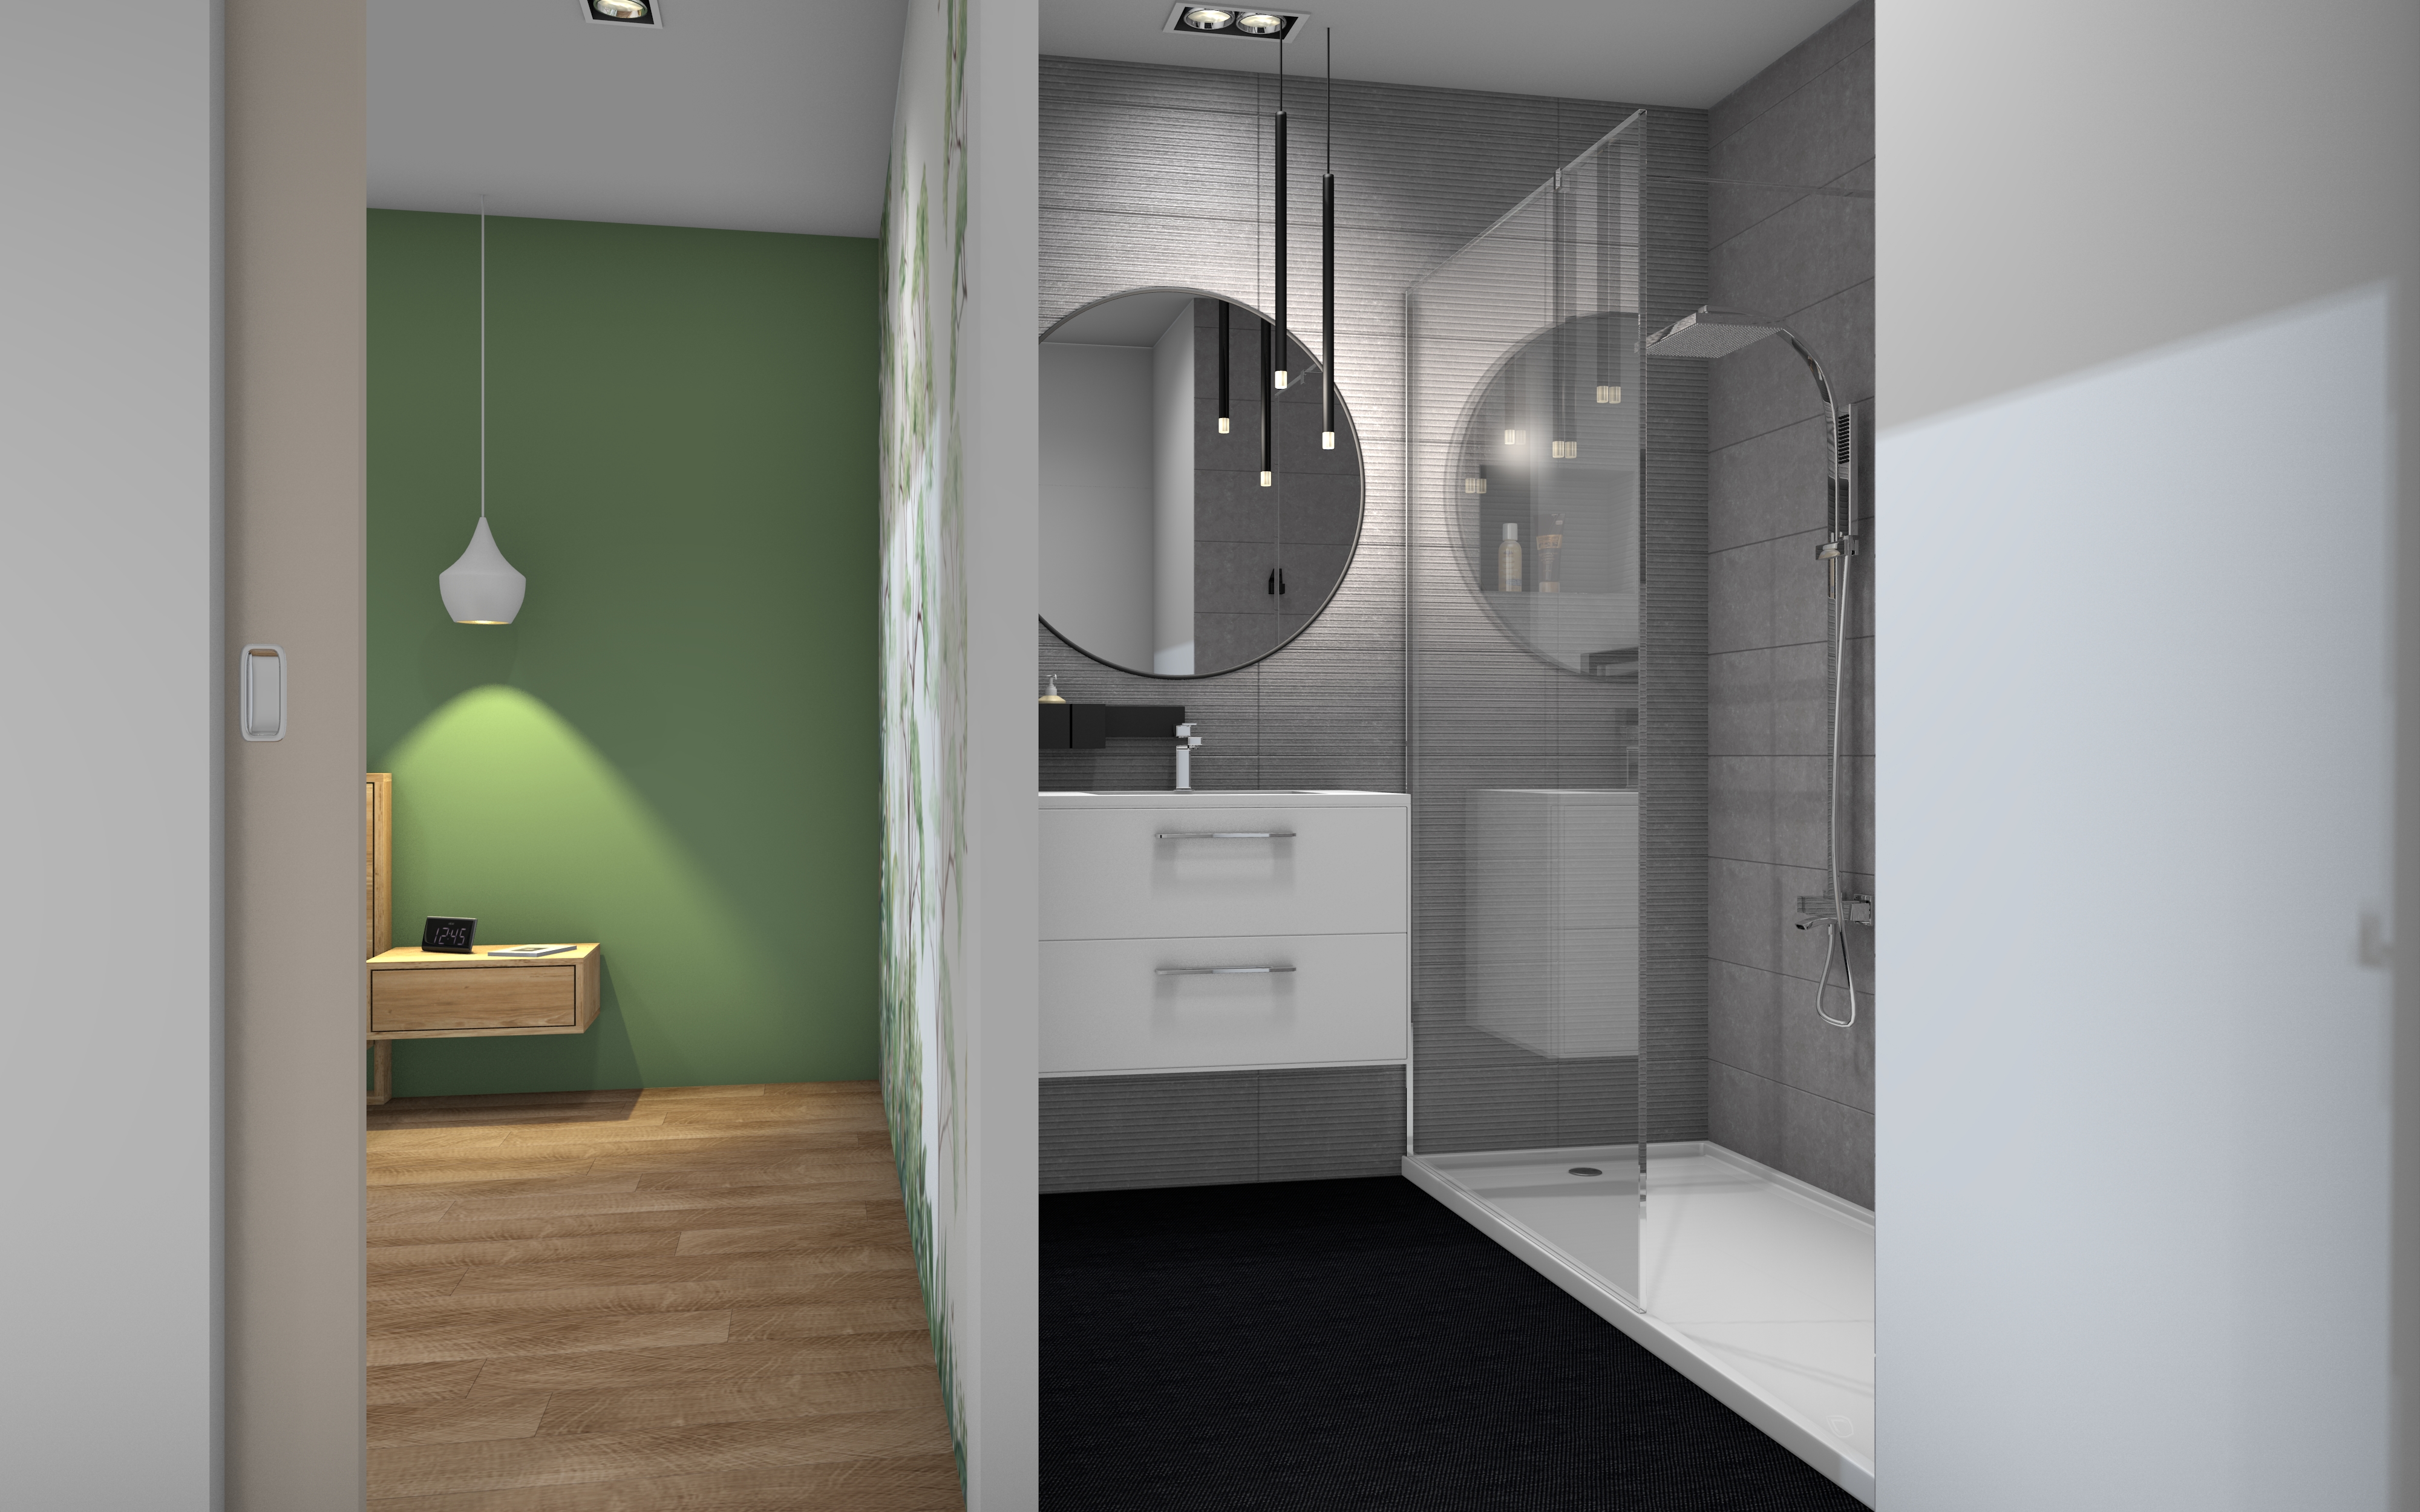 3D Transforamation entres, séjour, cuisine, chambre et salle de bains 